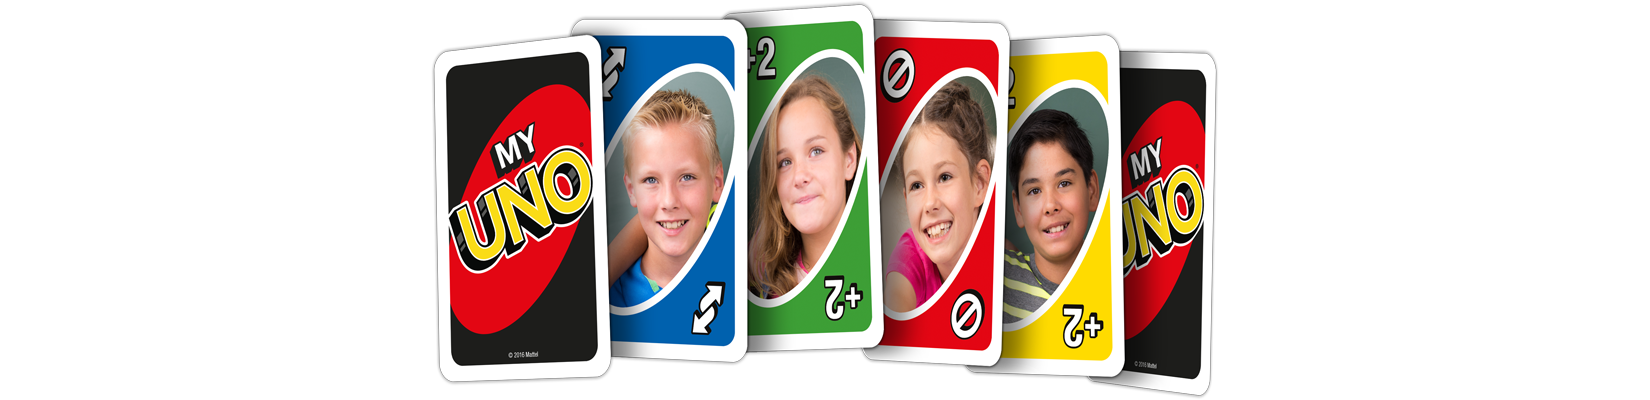 Das personalisierte Kartenspiel UNO von LUUDOO ist ein tolles Geburtstagsgeschenk für jüngere Kinder